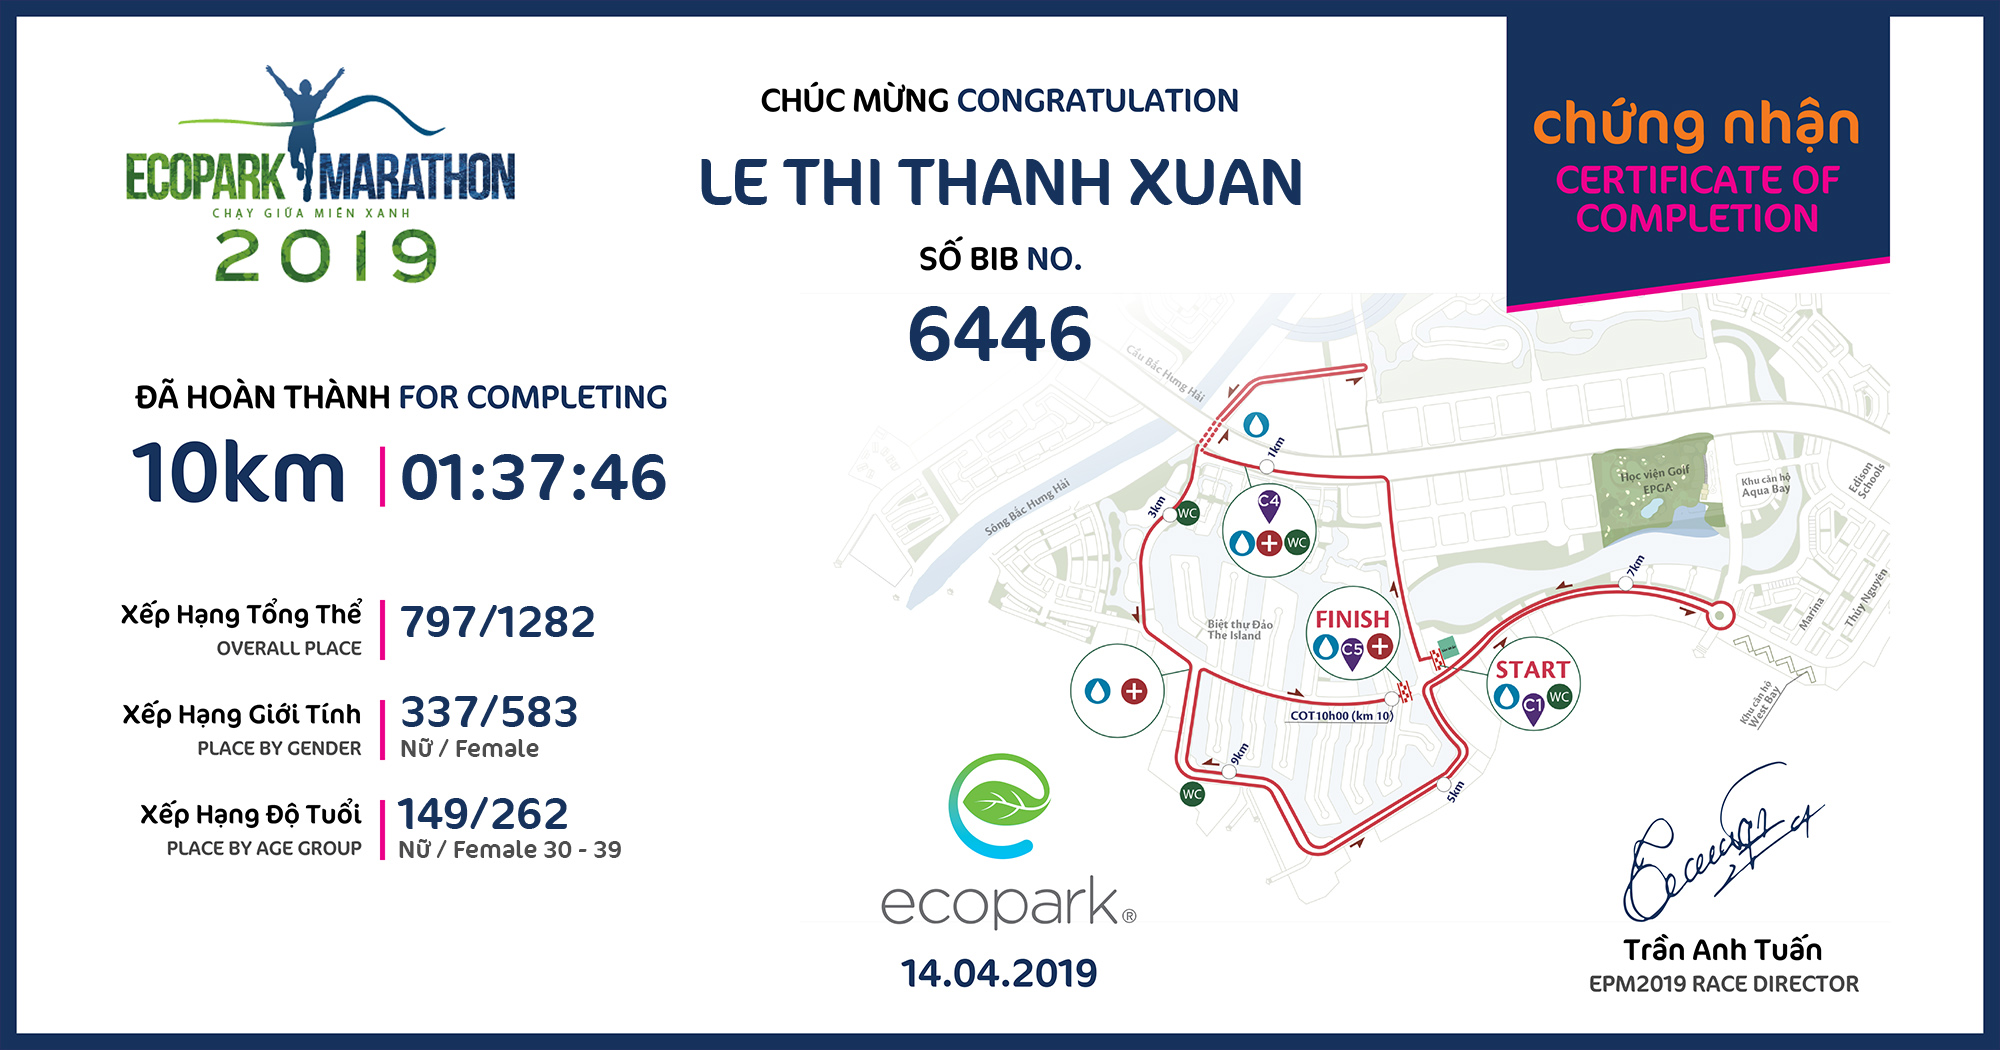 6446 - Le Thi Thanh Xuan